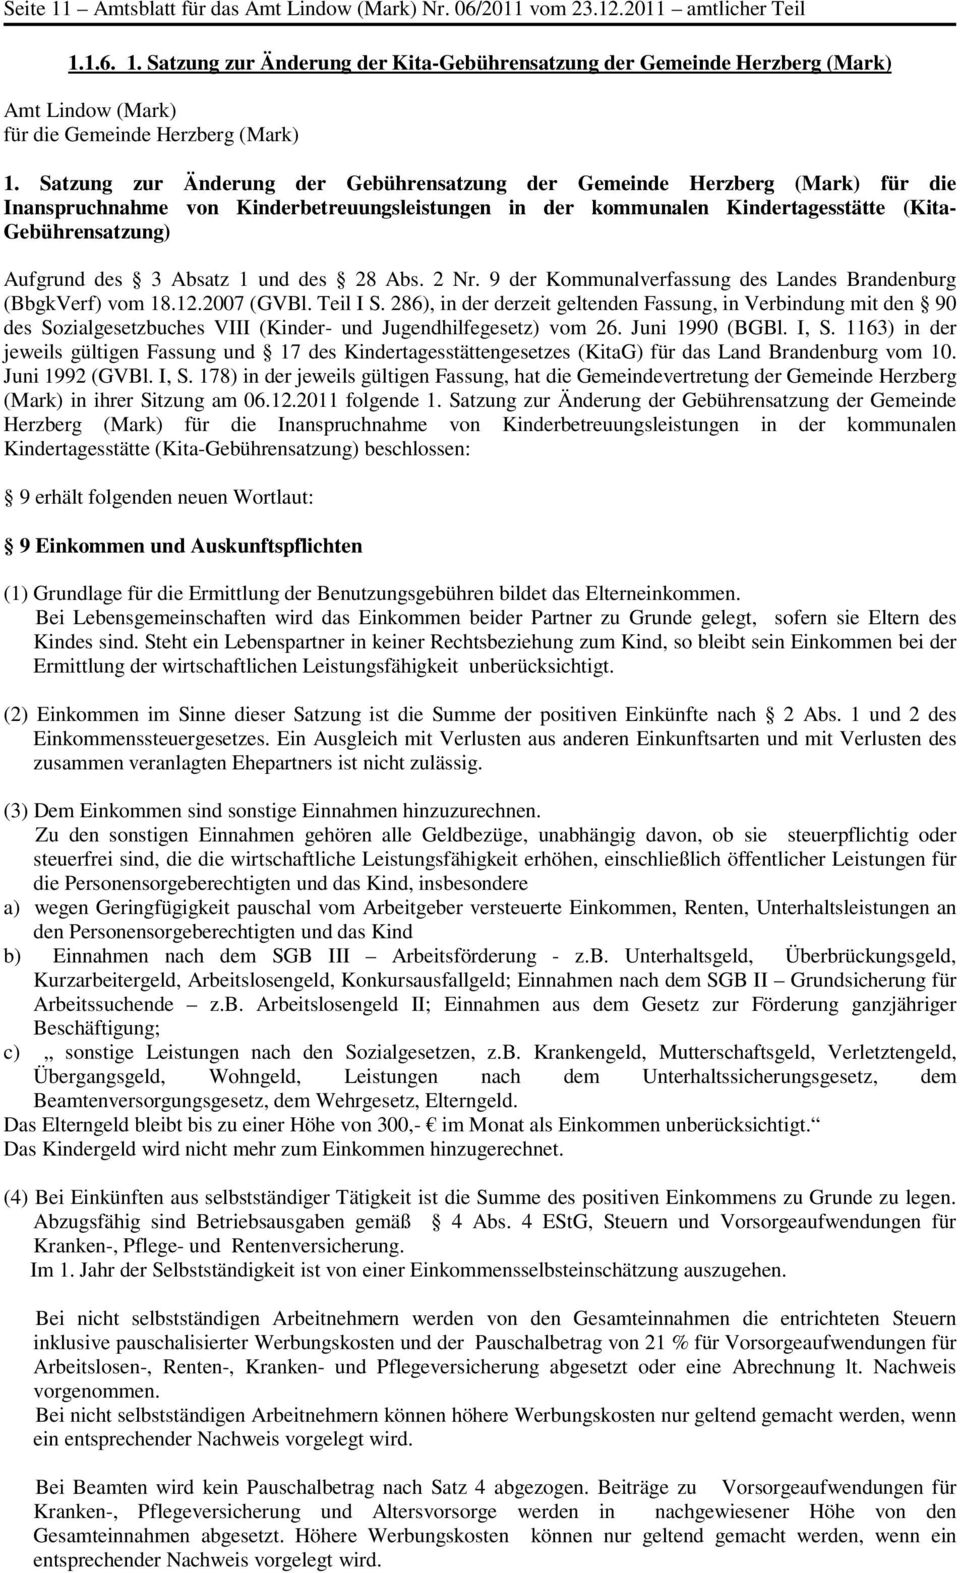 Absatz 1 und des 28 Abs. 2 Nr. 9 der Kommunalverfassung des Landes Brandenburg (BbgkVerf) vom 18.12.2007 (GVBl. Teil I S.